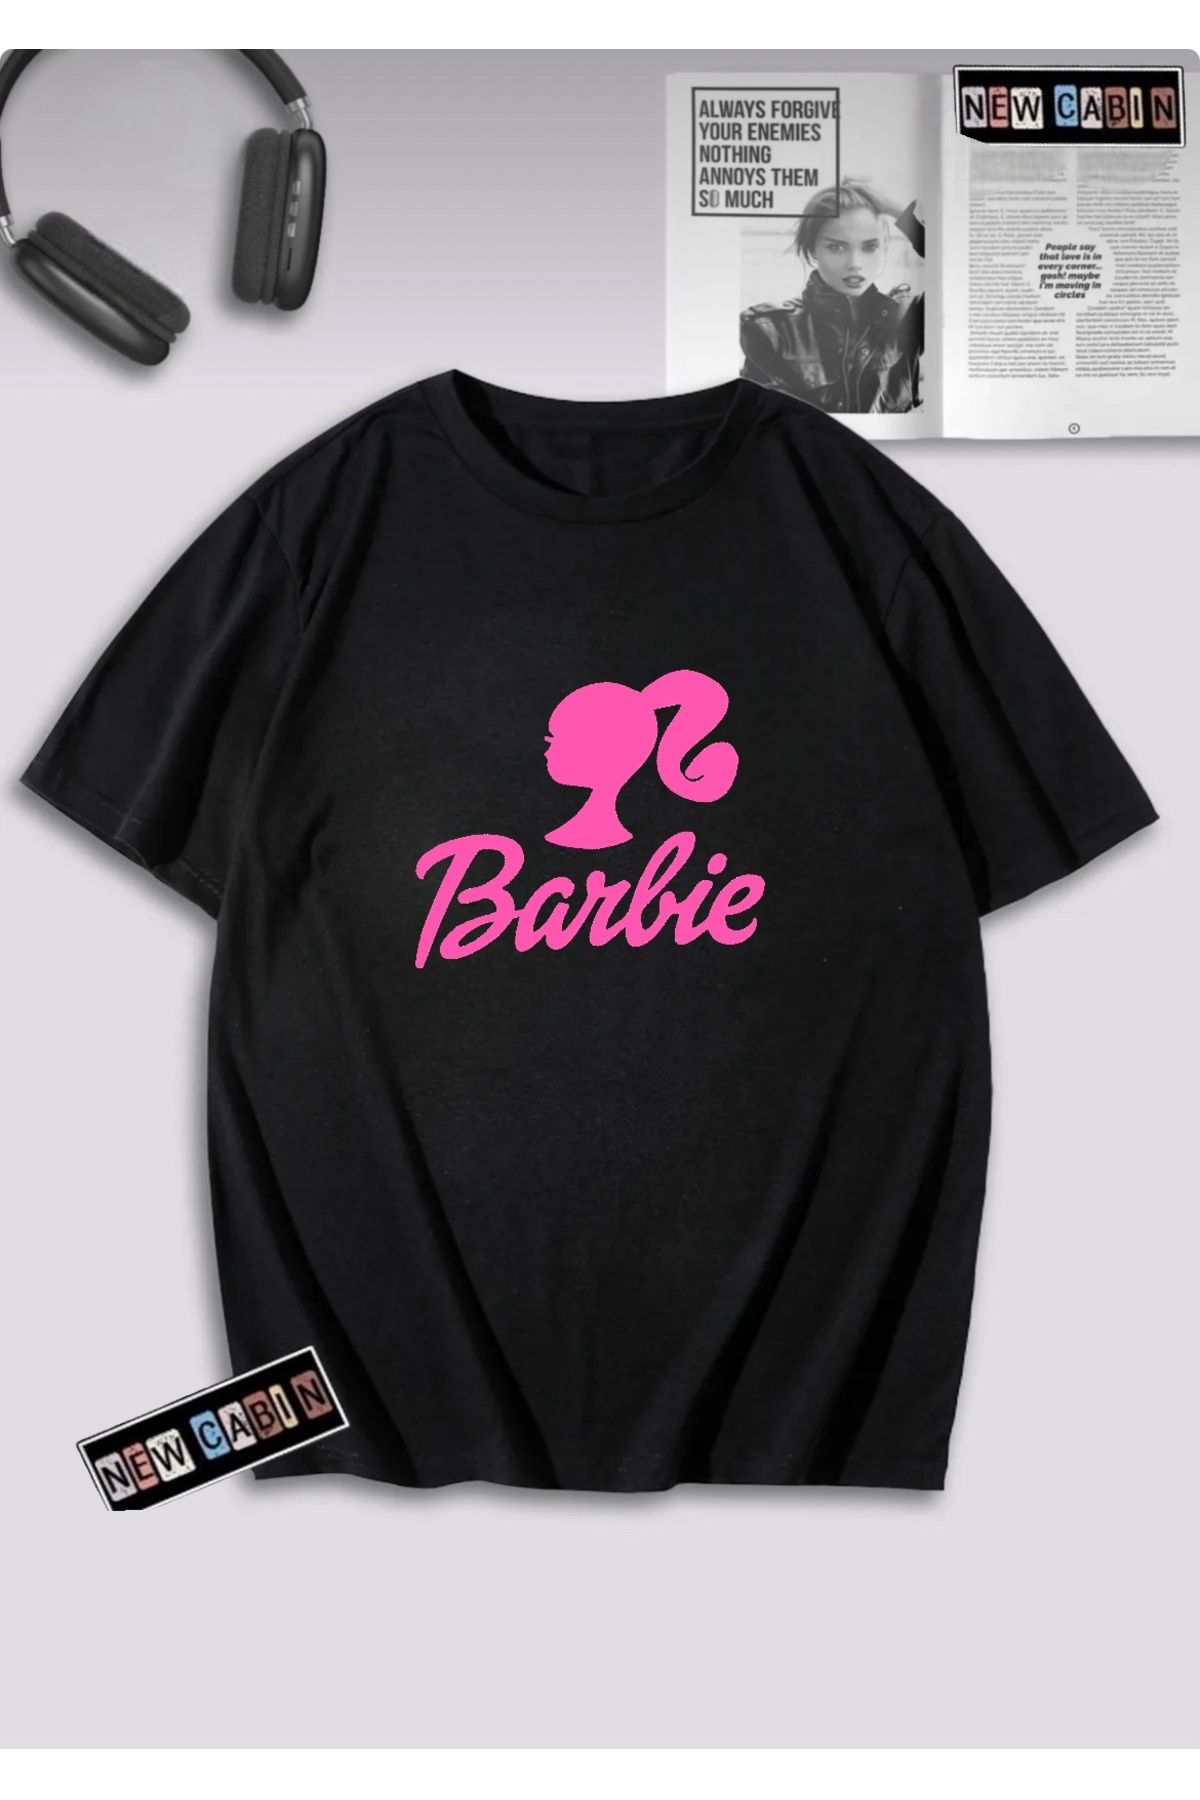 NewCabin Yeni Sezon Kadın Pamuklu 30/1 A Kalite Kumaş Ön Barbie Baskılı Oversize T-shirt